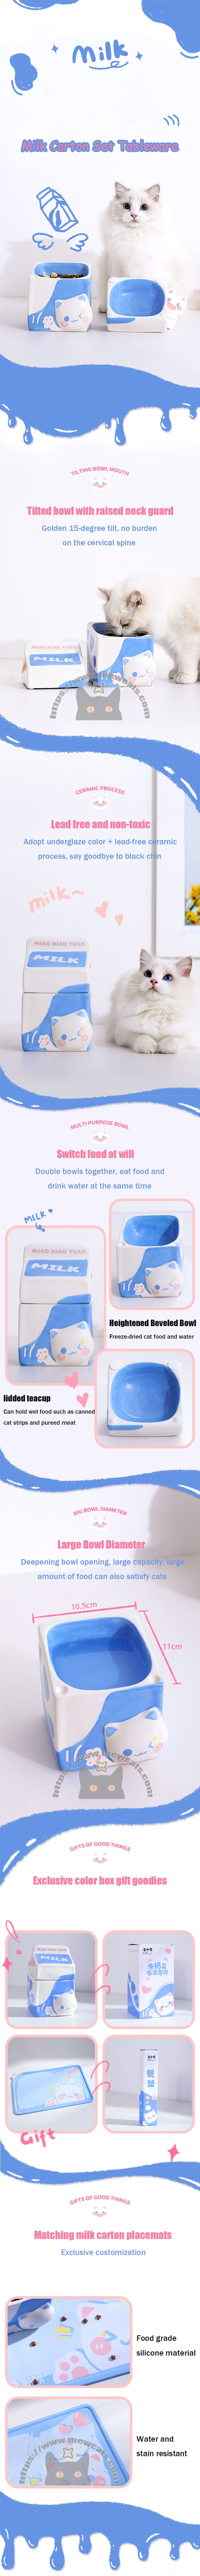 Milk Set Ceramic Cat Food Water Bowl Slant Elevated Bowl